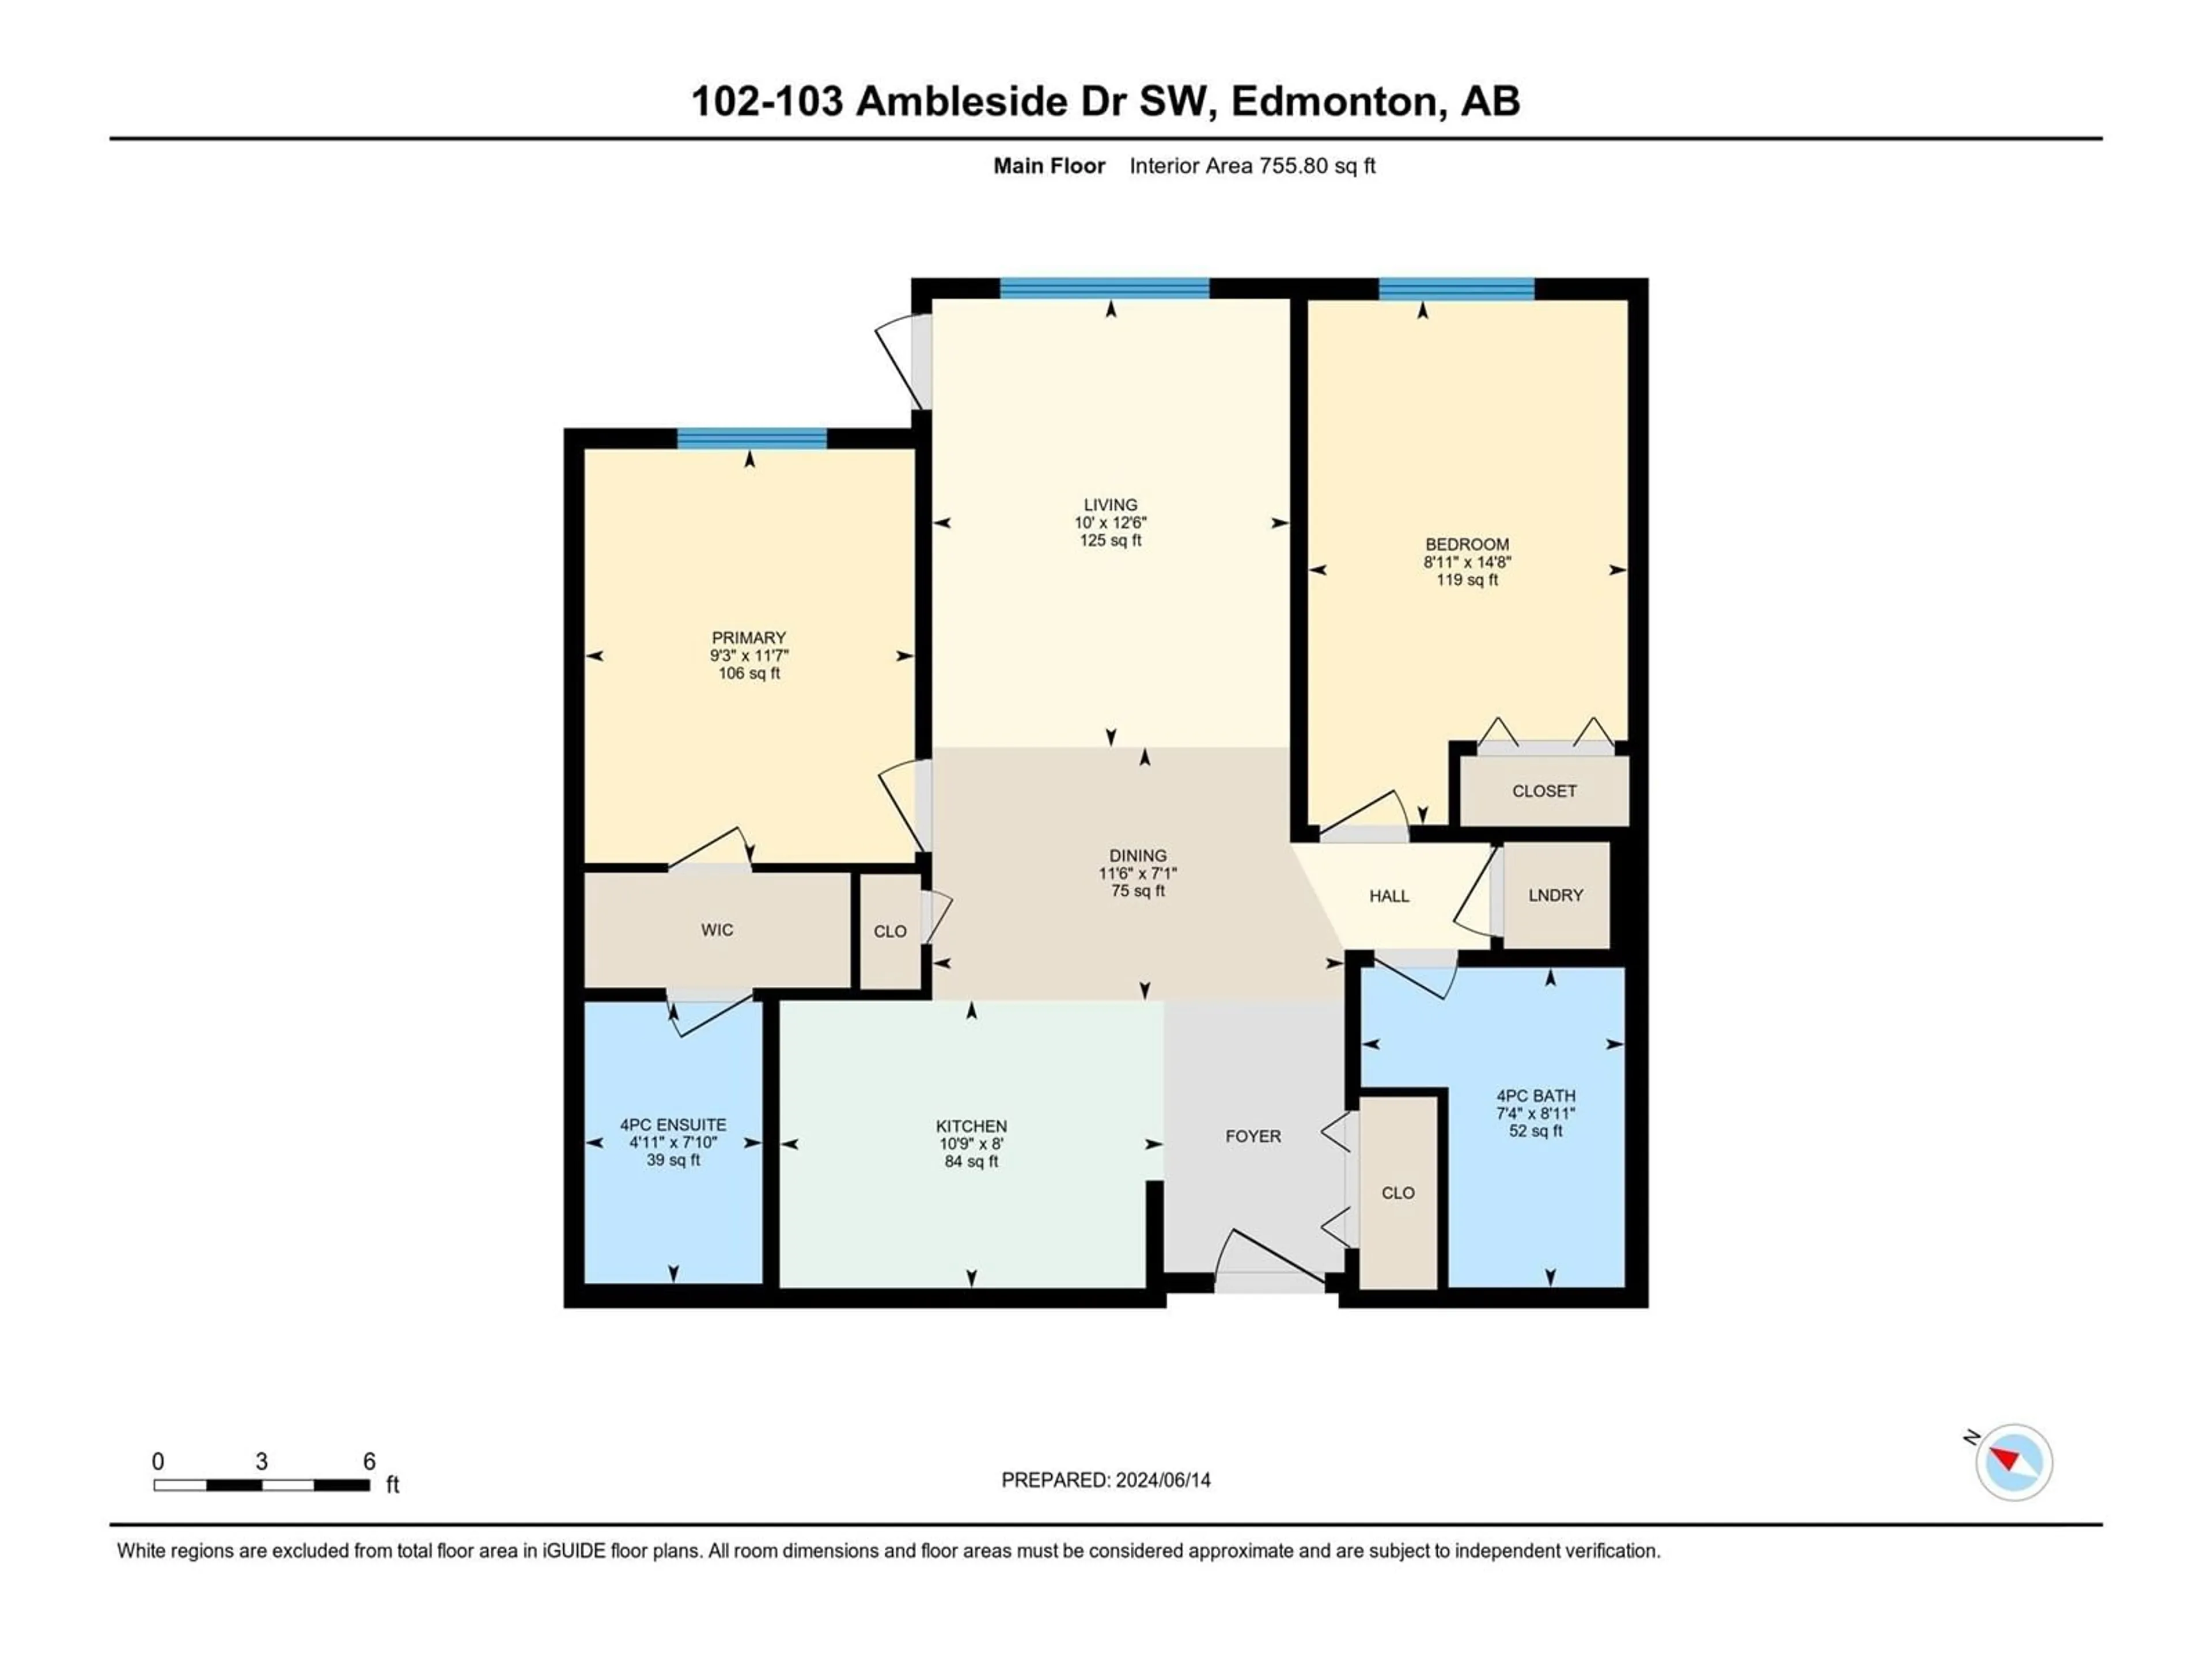 Floor plan for #102 103 Ambleside Drive SW SW, Edmonton Alberta T6W0J4